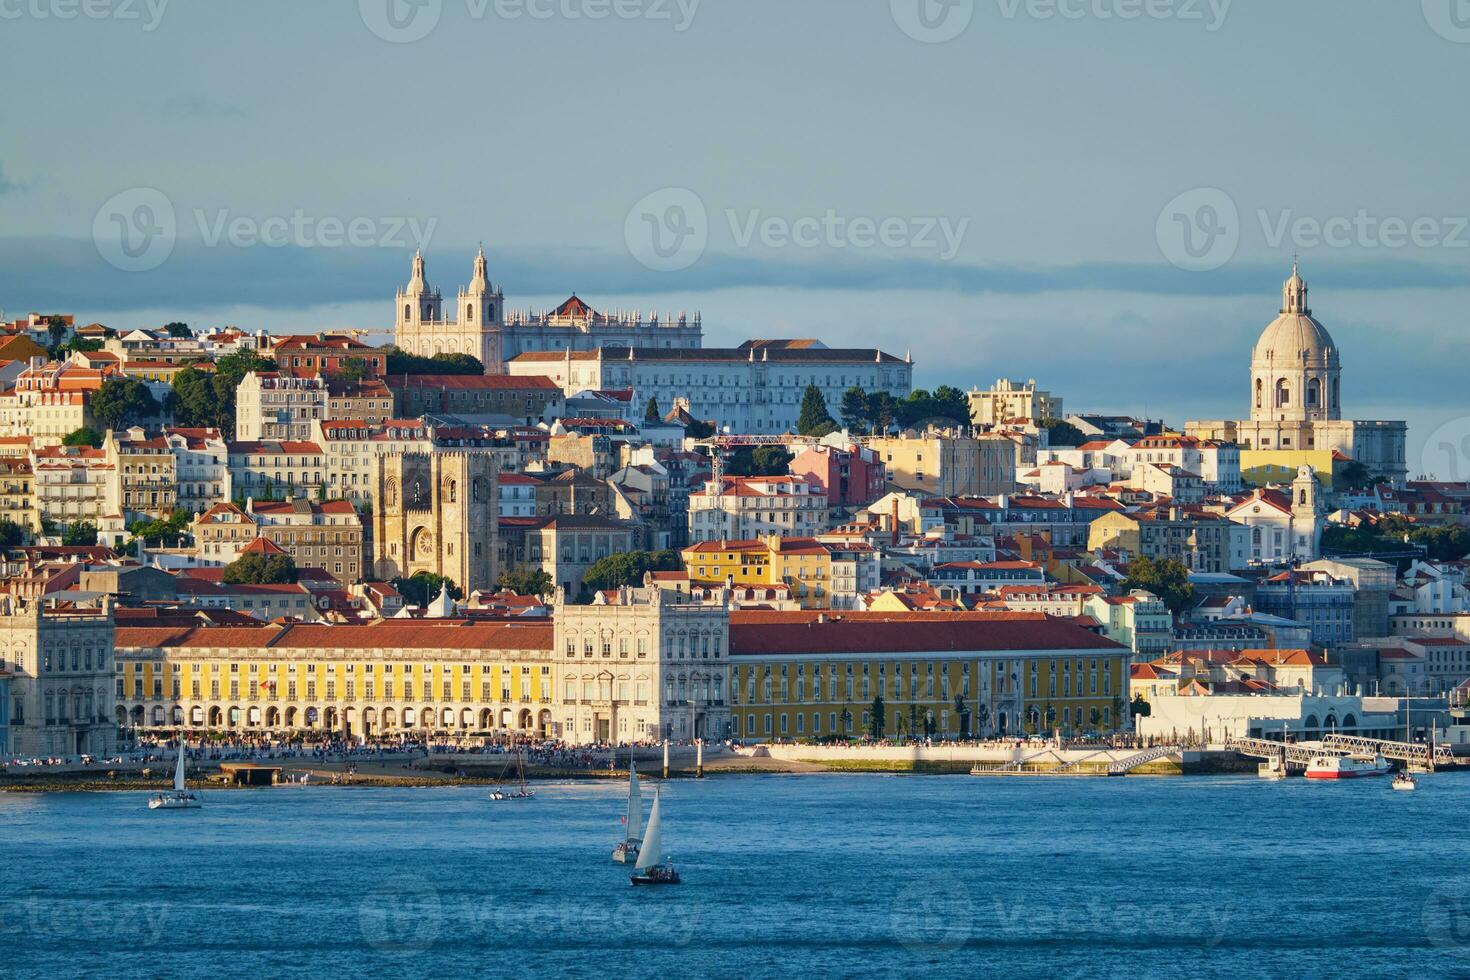 Aussicht von Lissabon Aussicht Über Tagus Fluss mit Yachten und Boote auf Sonnenuntergang. Lissabon, Portugal foto